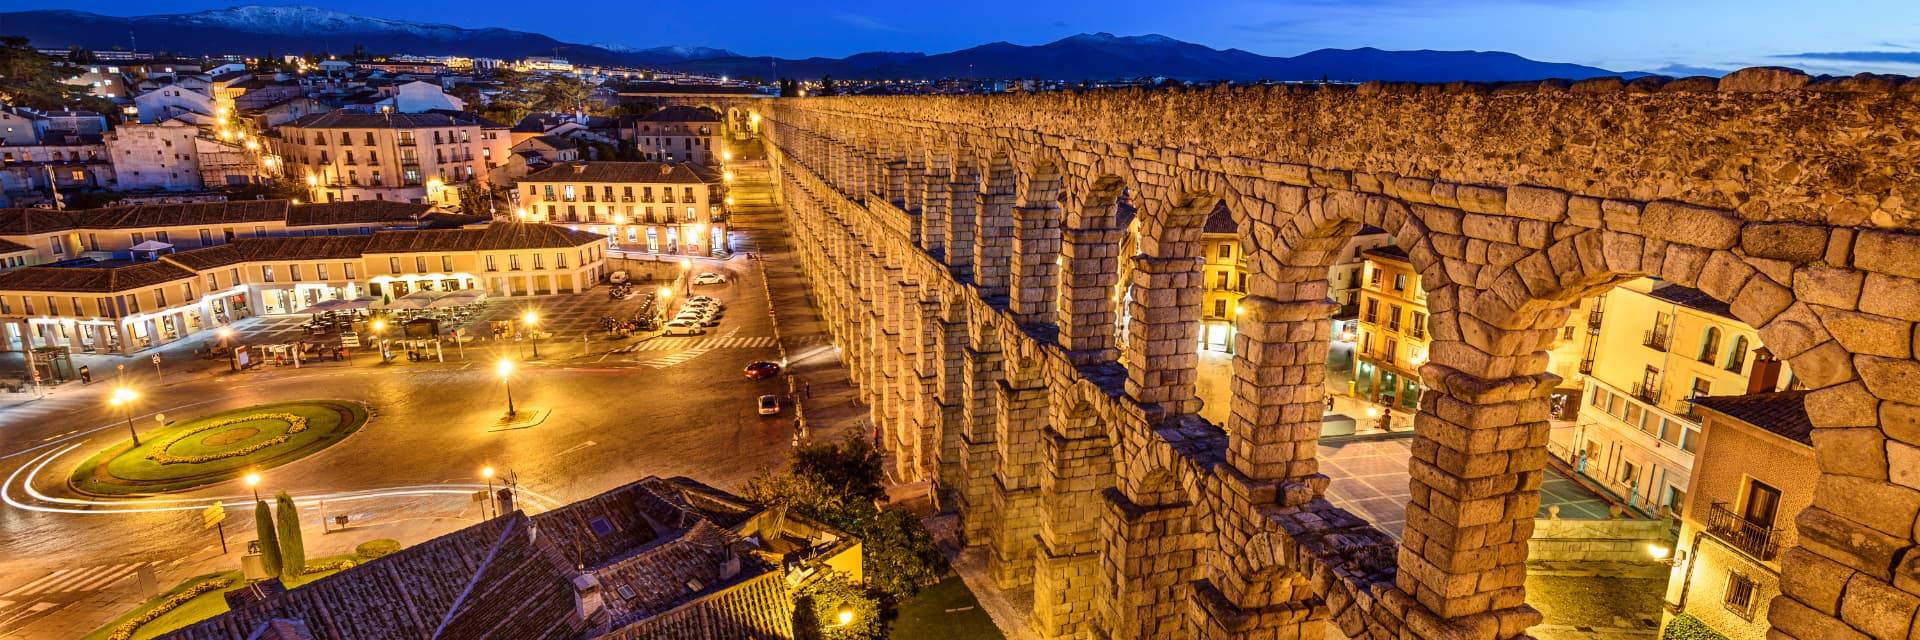 Free tour Leyendas y Misterios de Segovia